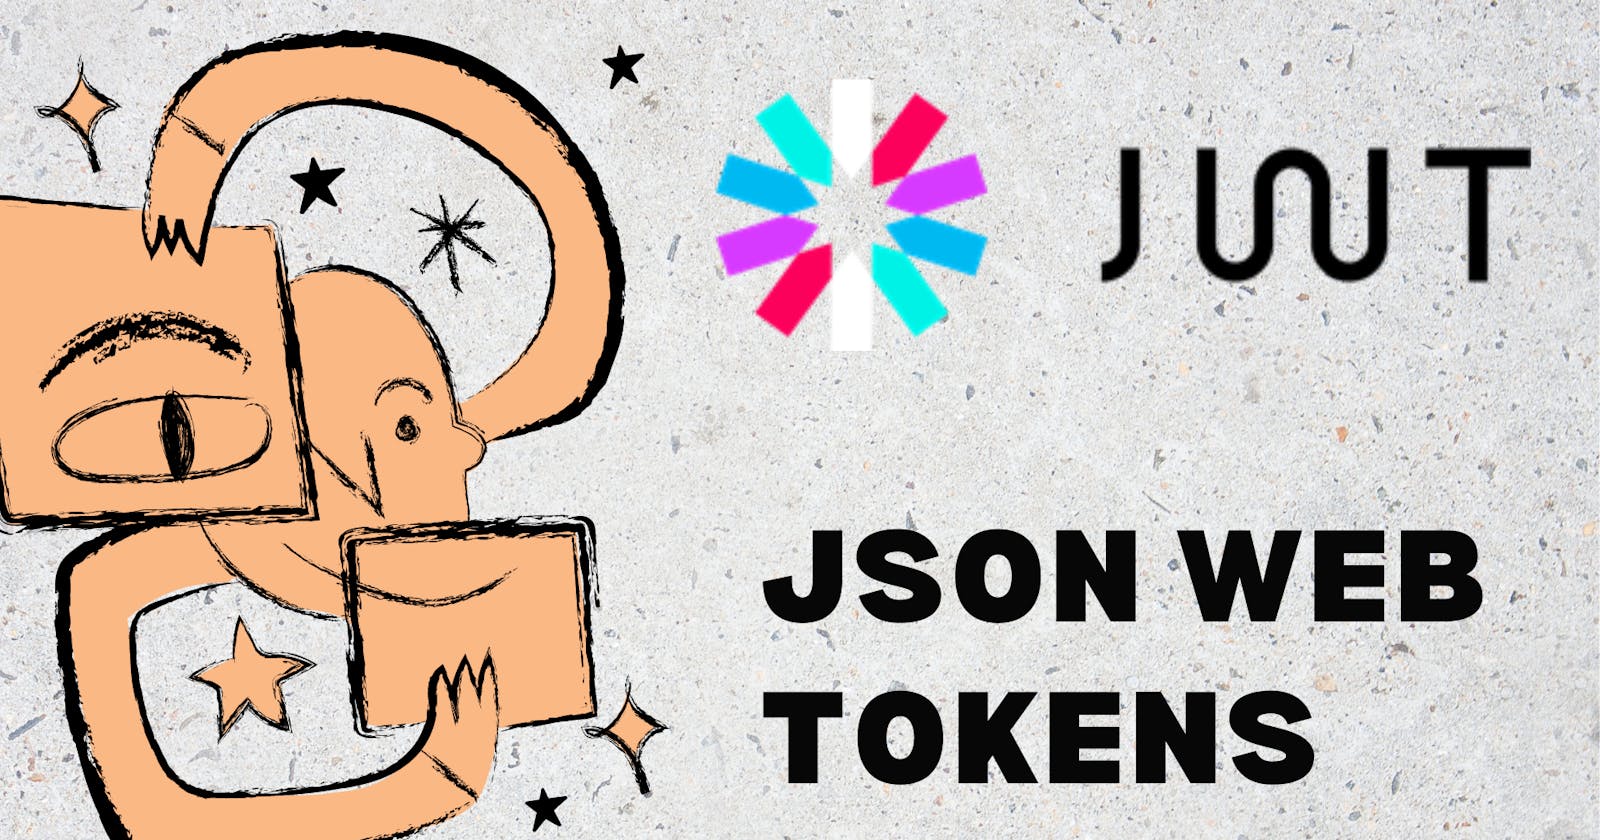 JSON Web Token(JWT)